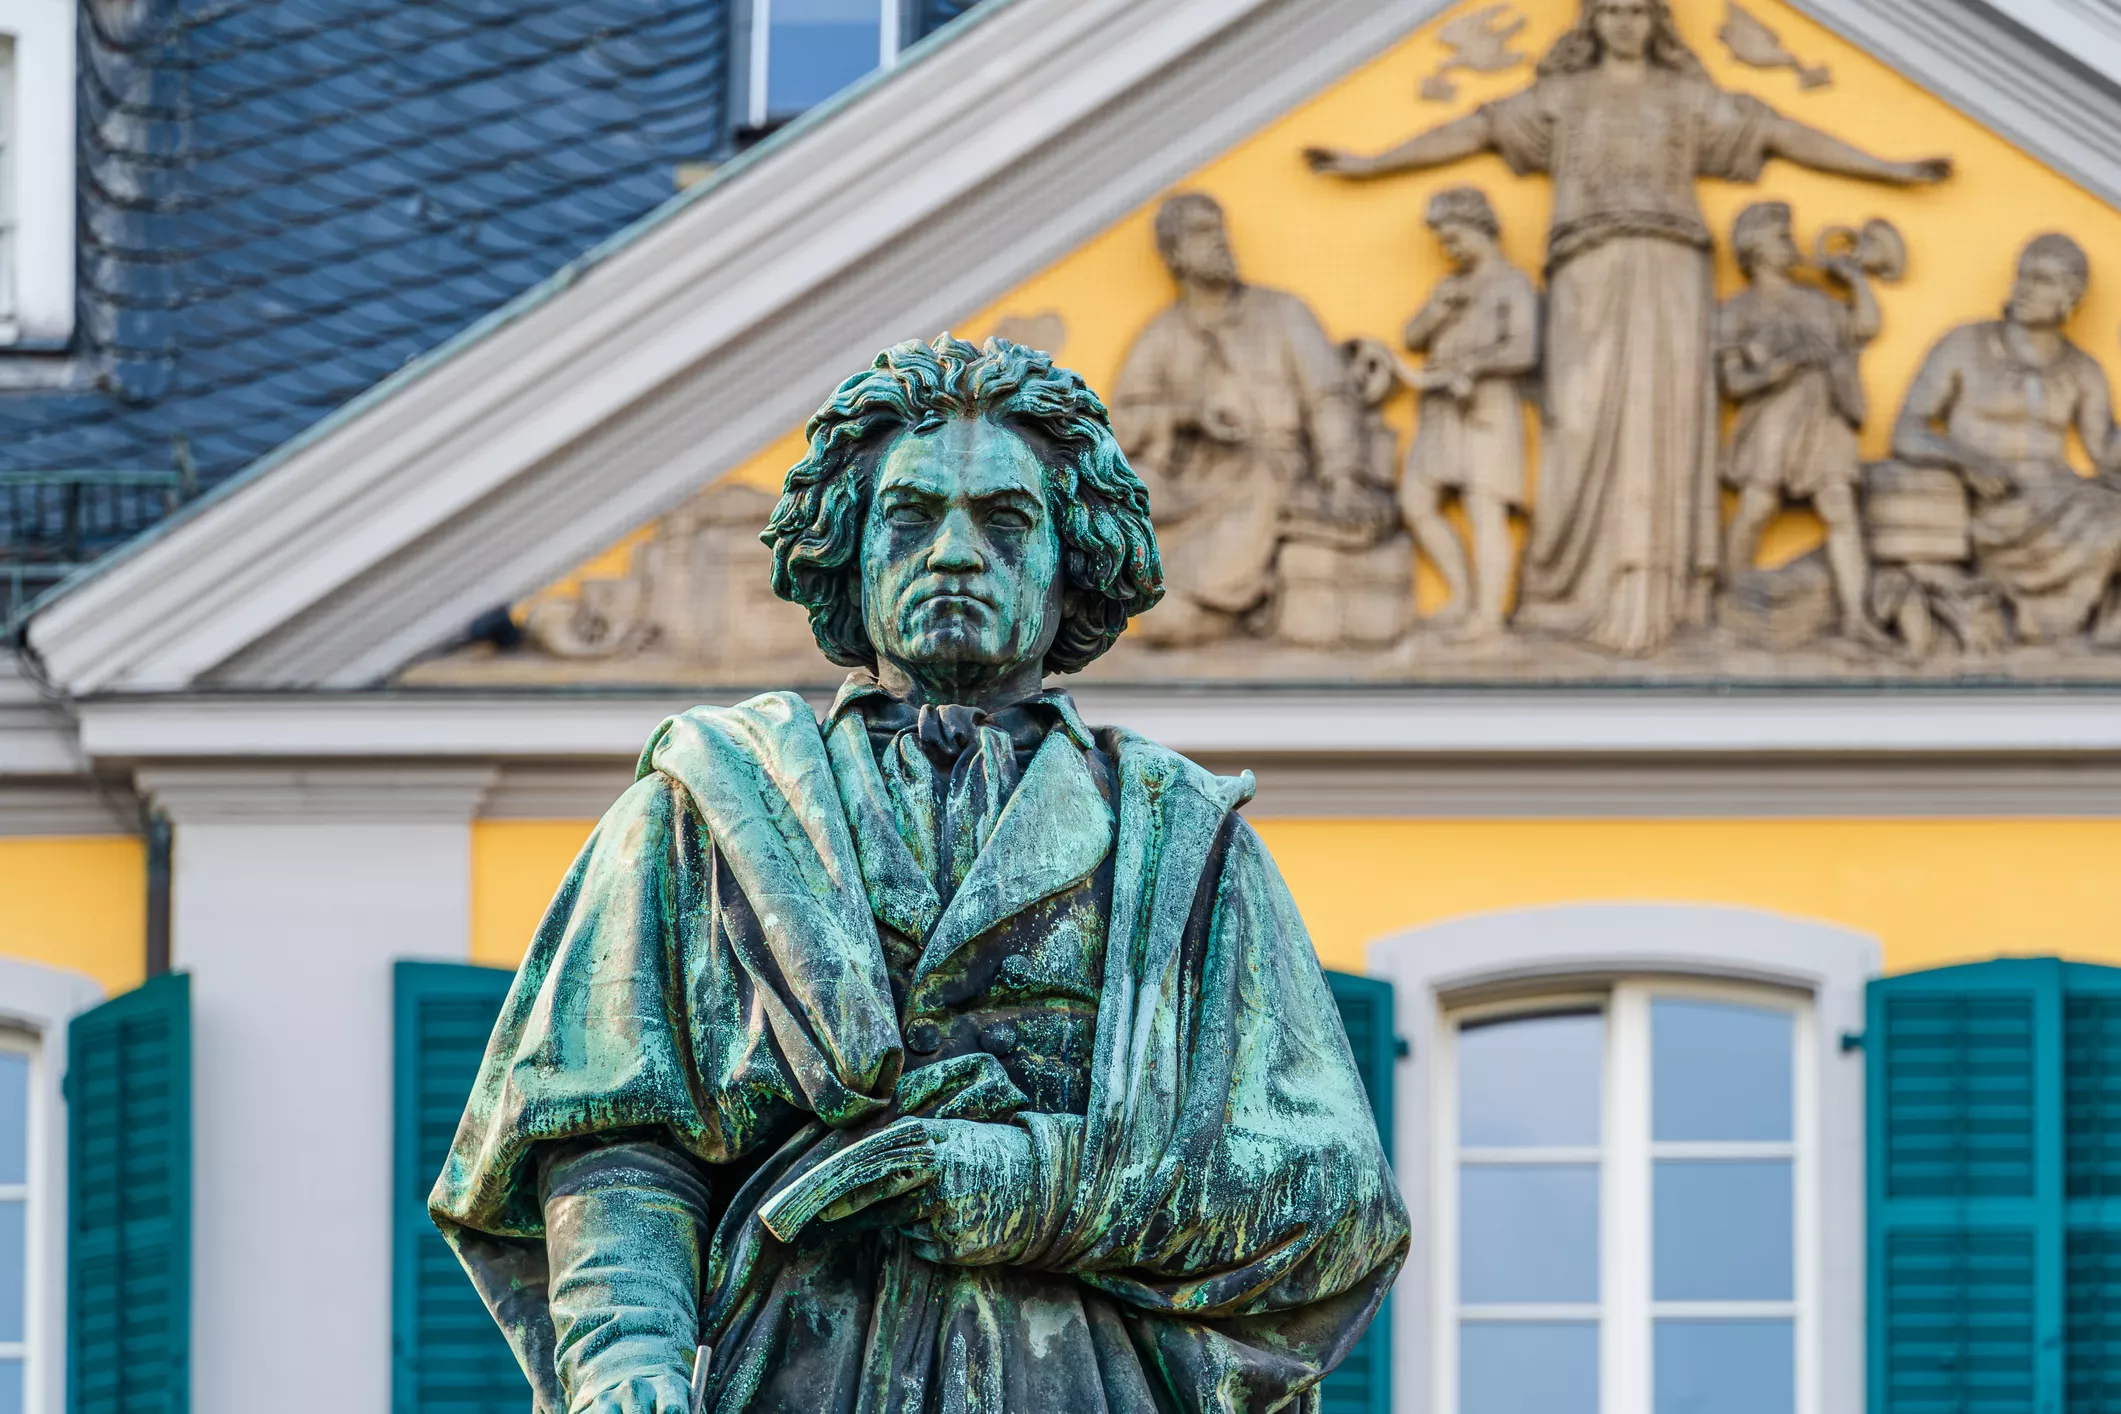 Estàtua del monument a Beethoven a Bonn, Alemanya